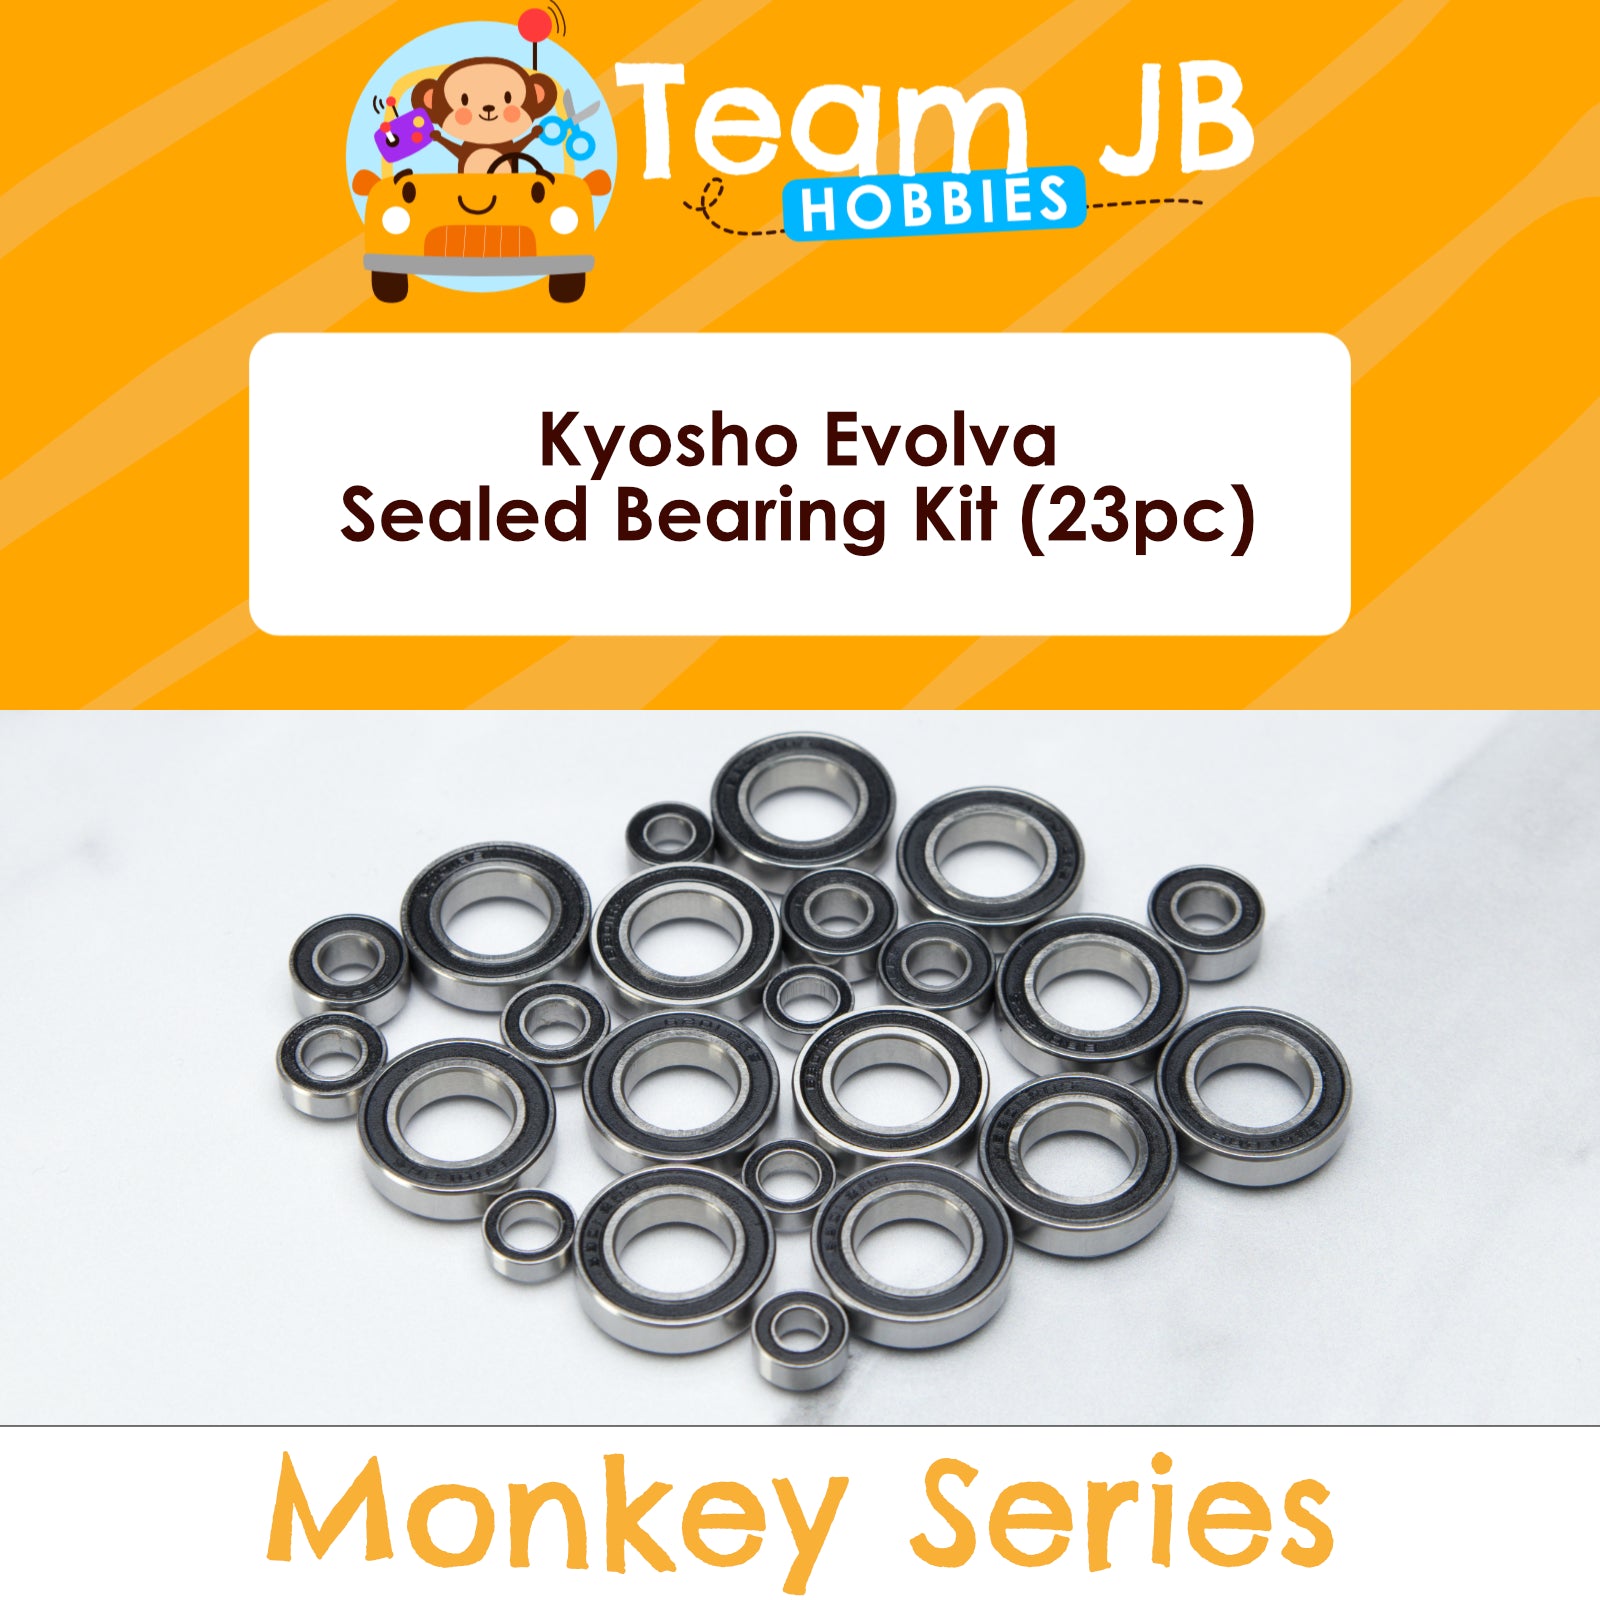 Kyosho Evolva - Sealed Bearing Kit